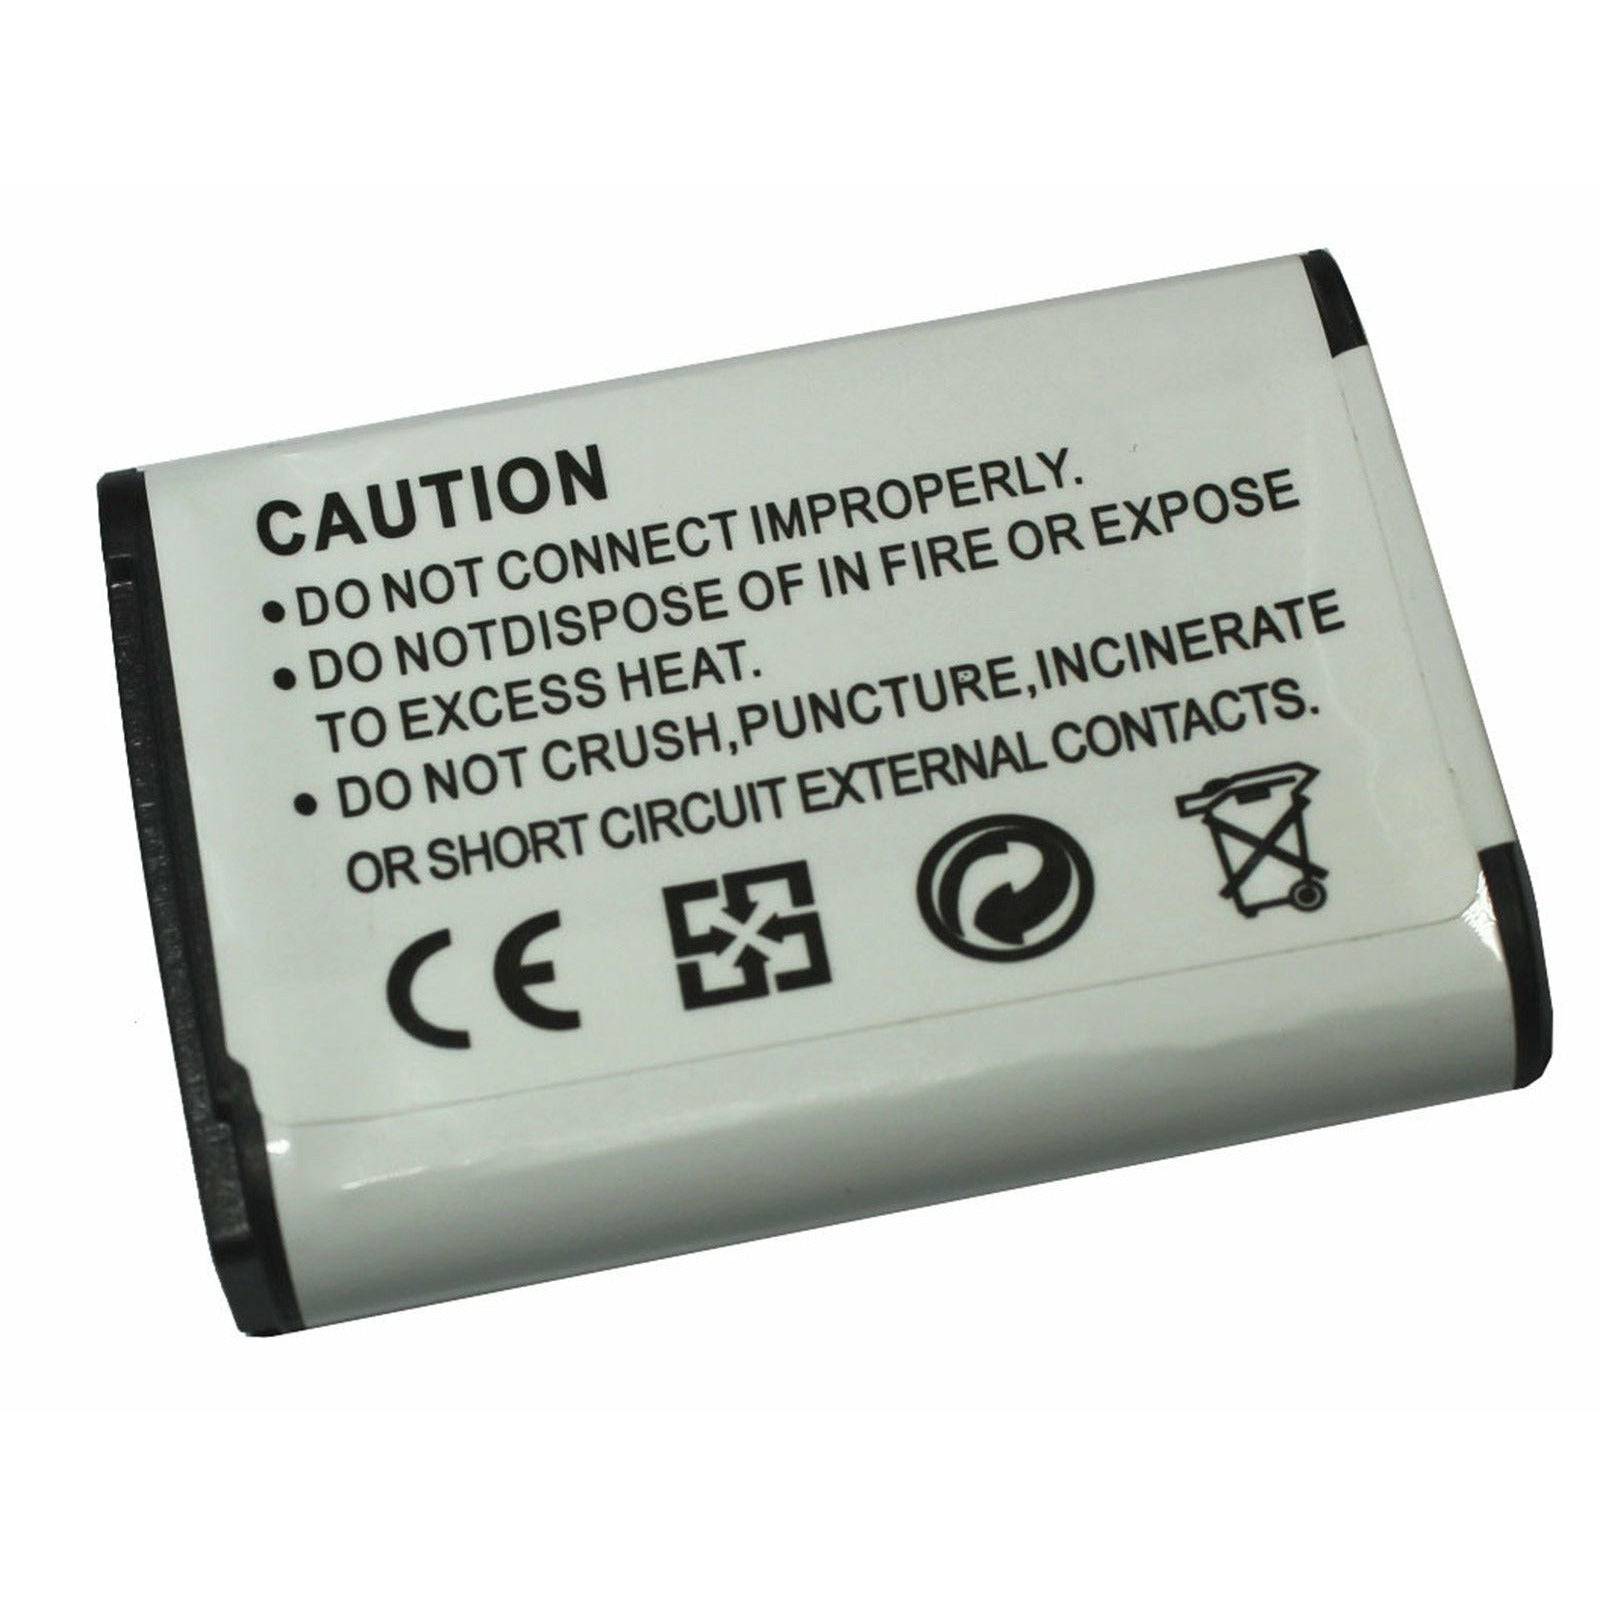 EN-EL23 Replacement Battery For Nikon Coolpix B700 P610 P610S P900 P900S